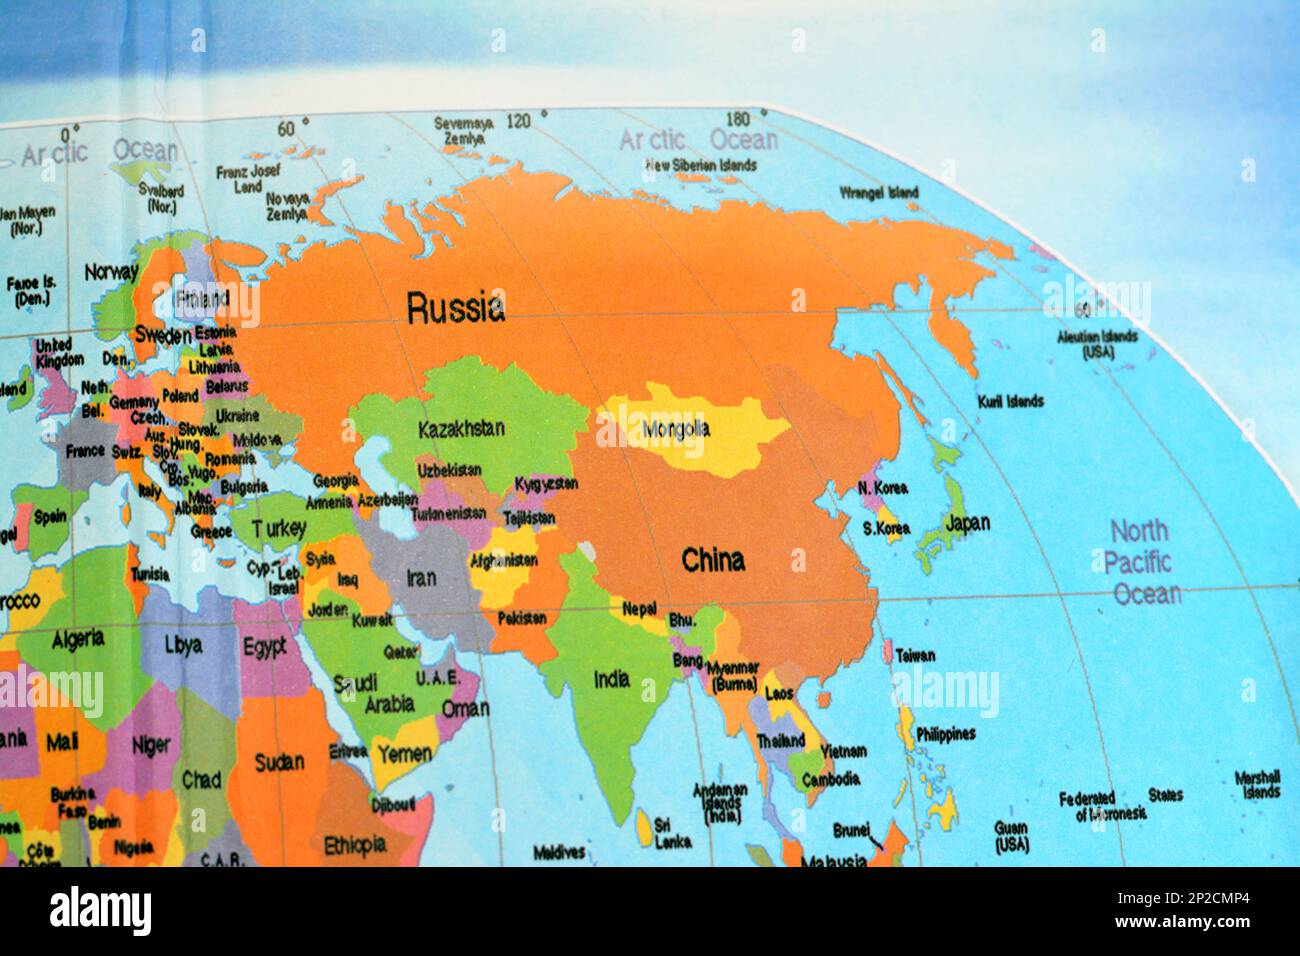 Asie et une partie des continents africains avec la Russie, la Chine, la Corée du Nord, la Corée du Sud, l'Inde, Pays arabes du Moyen-Orient, Iran, Pakistan, Ukraine, Japon, Mongol Banque D'Images